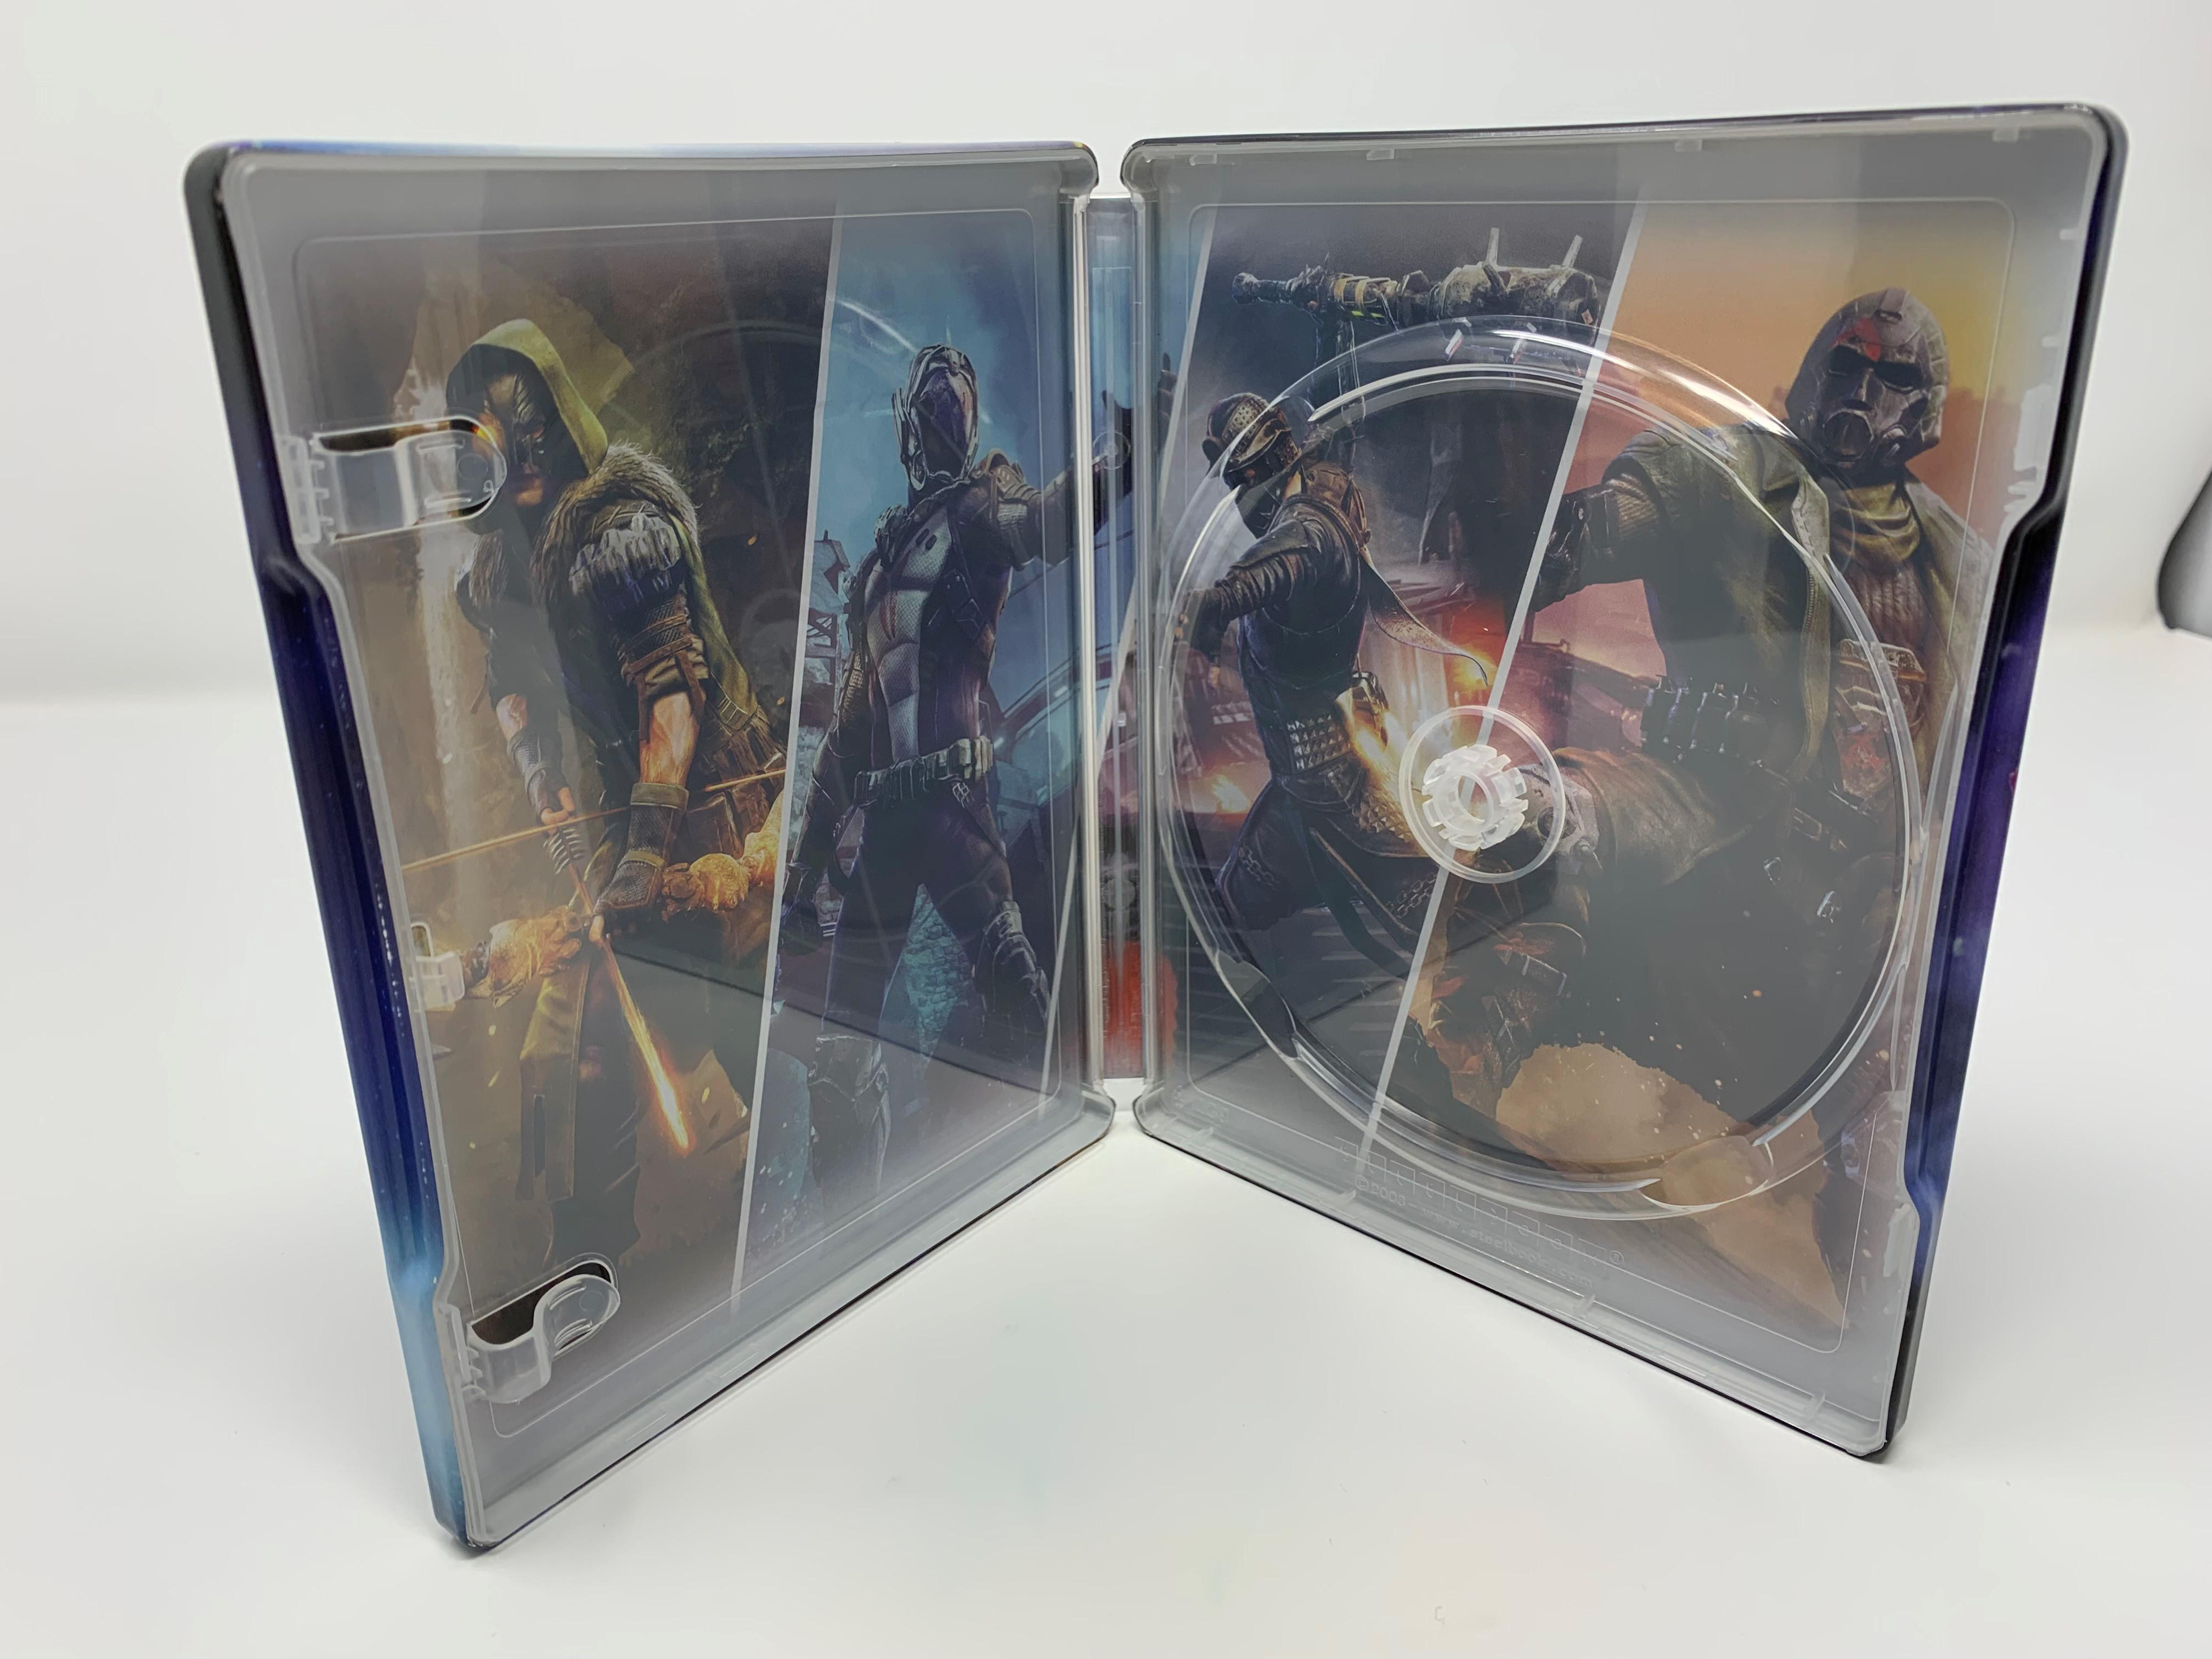 ELEX II - Day Edition 1 Steelbook - [PlayStation 4